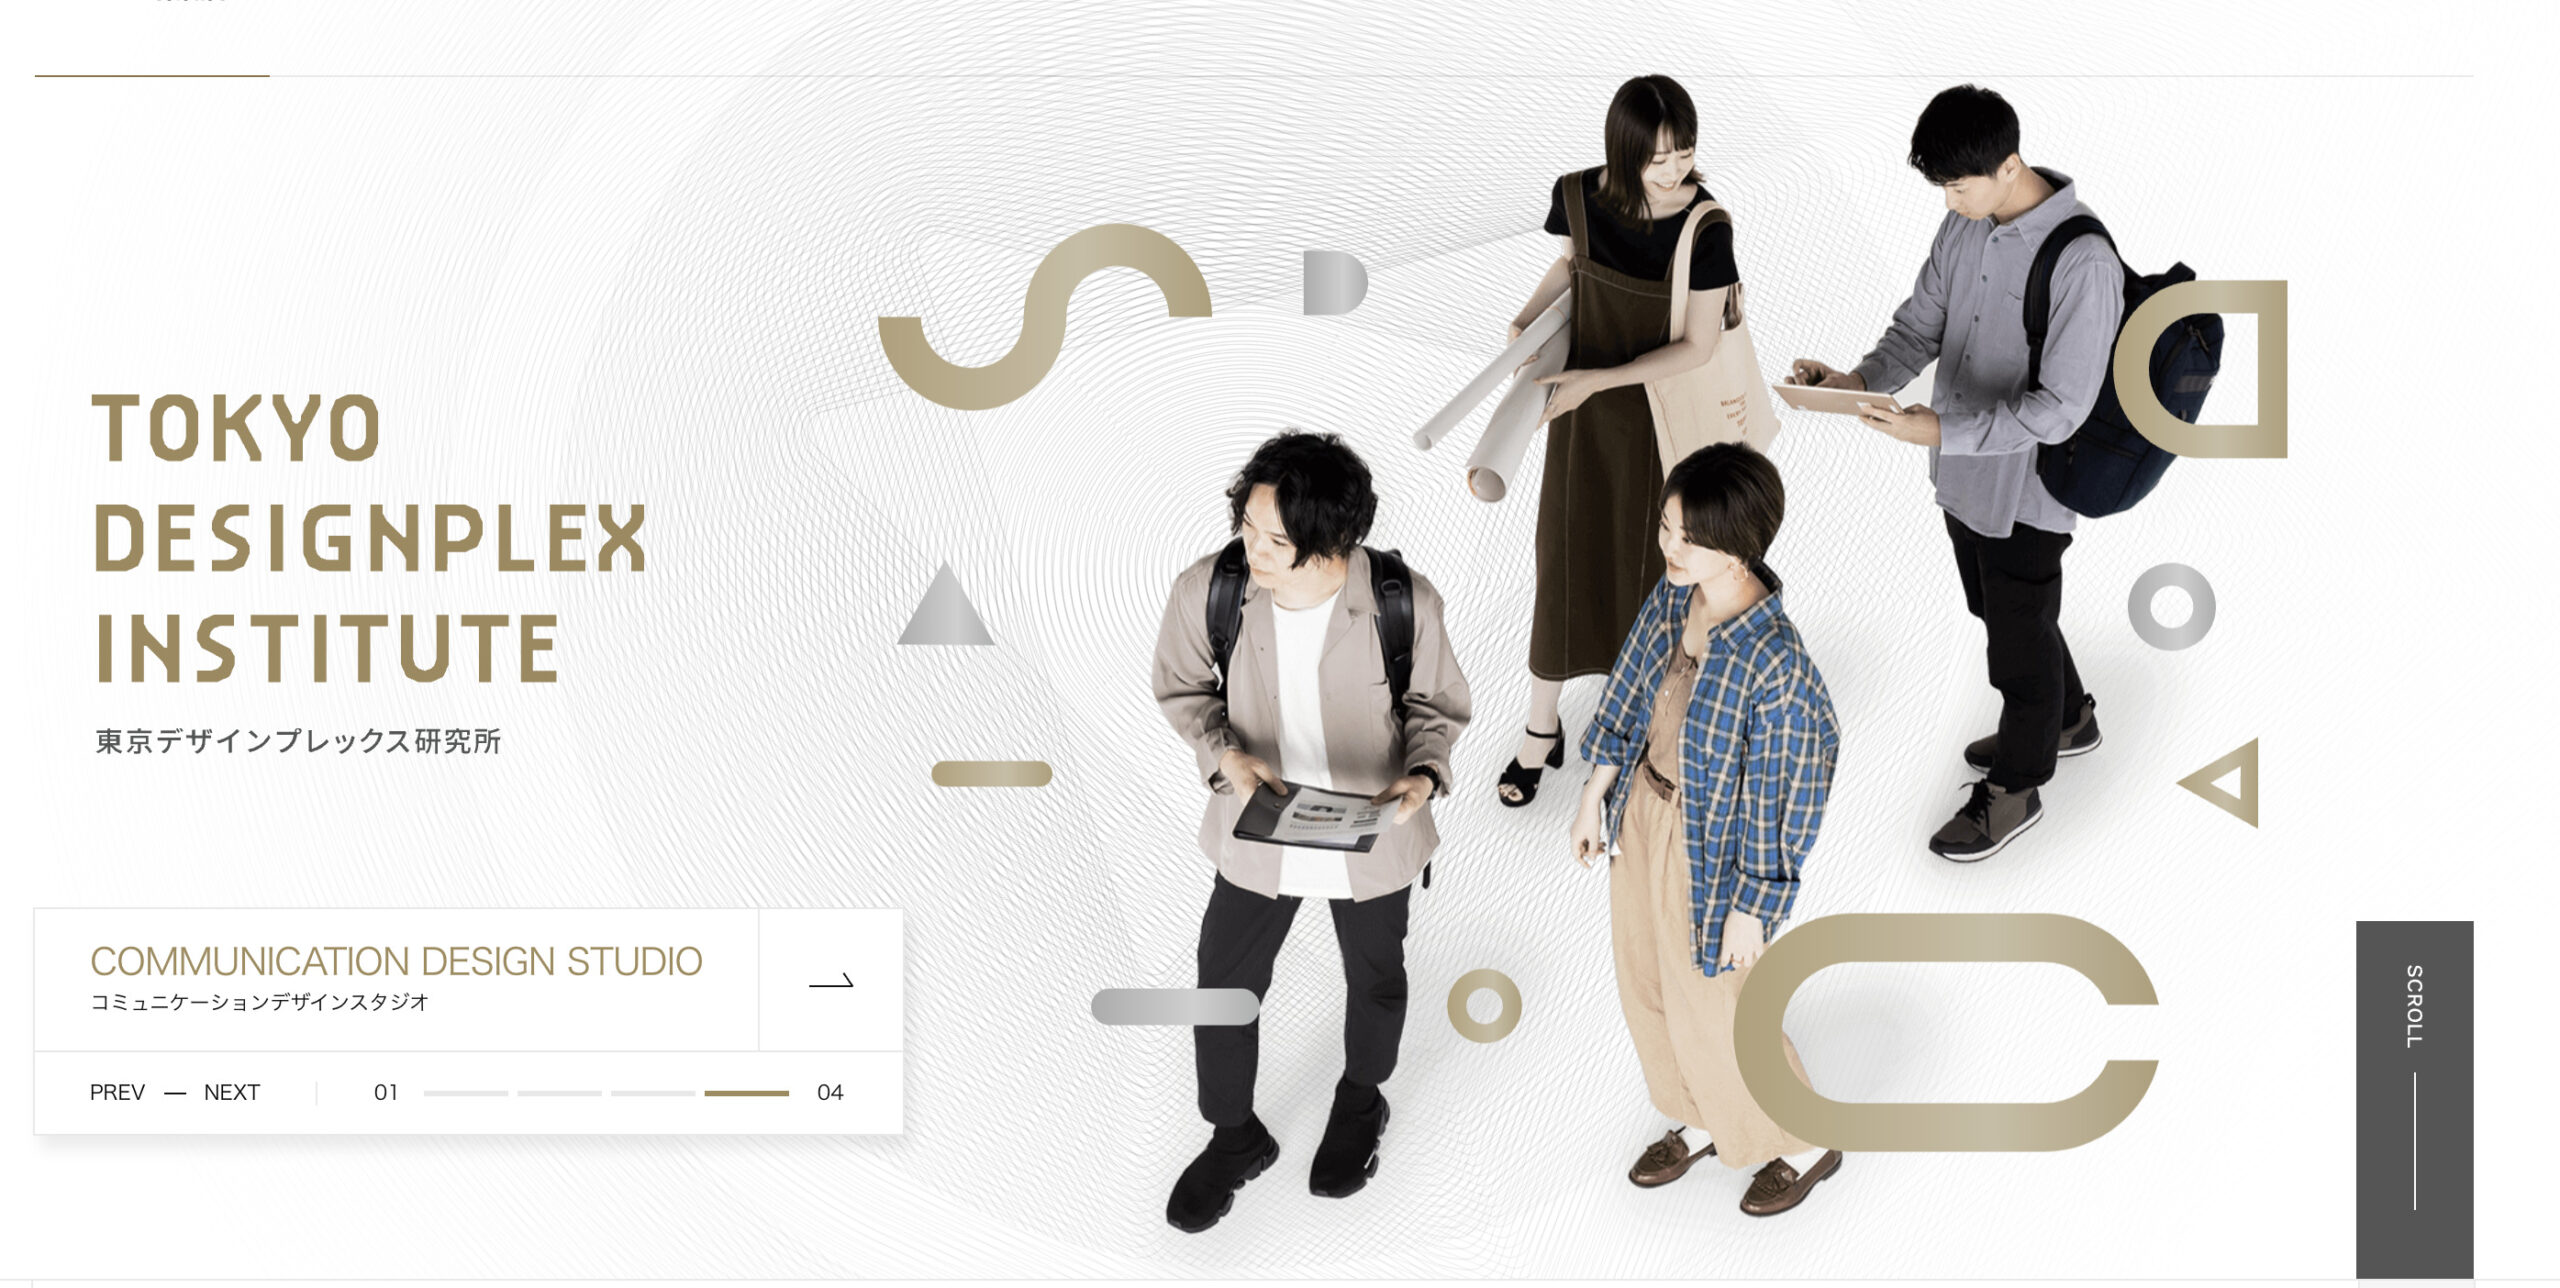 東京デザインプレックス研究所のホームページ